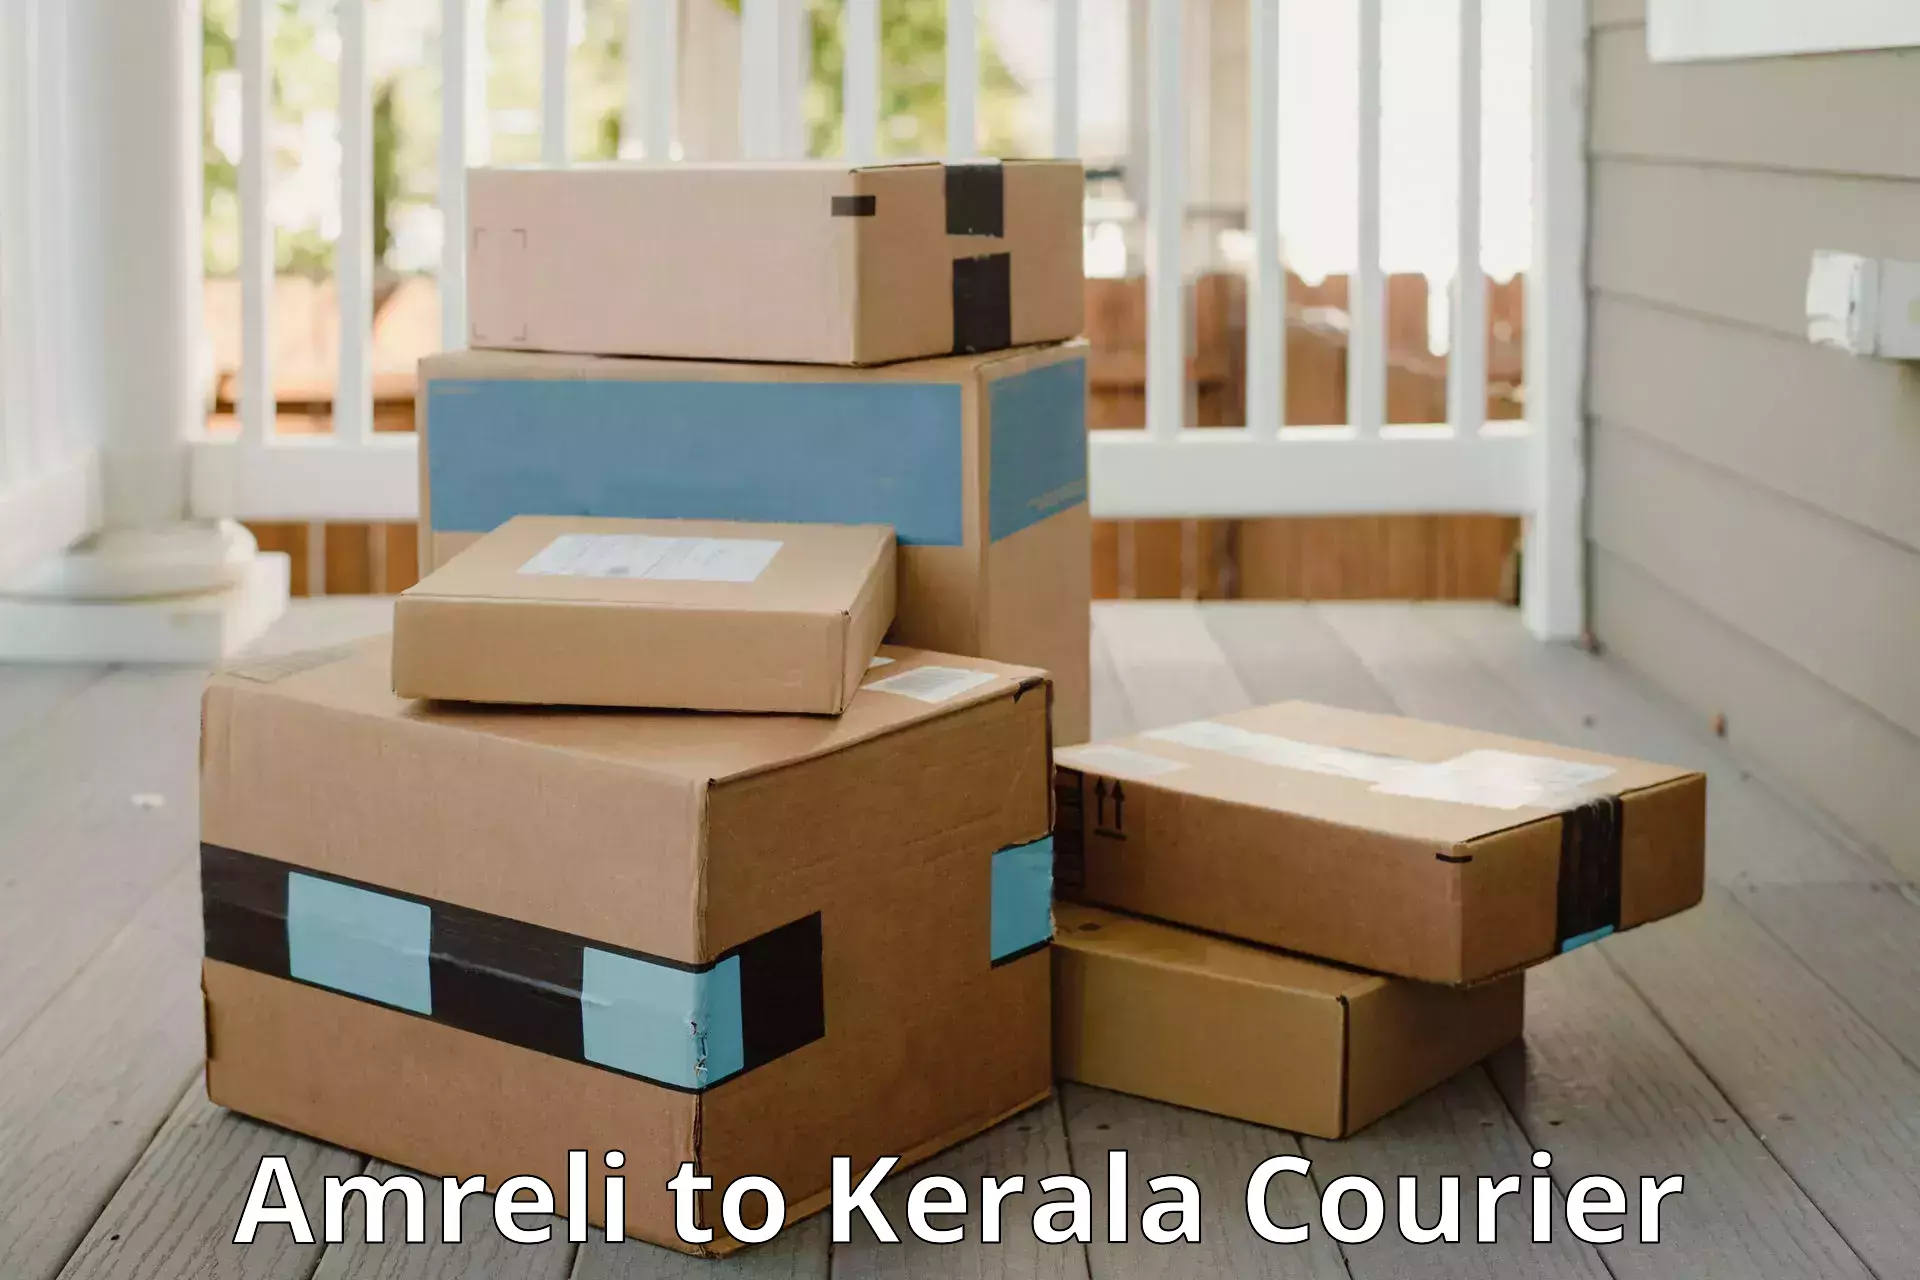 Doorstep luggage collection Amreli to Kerala